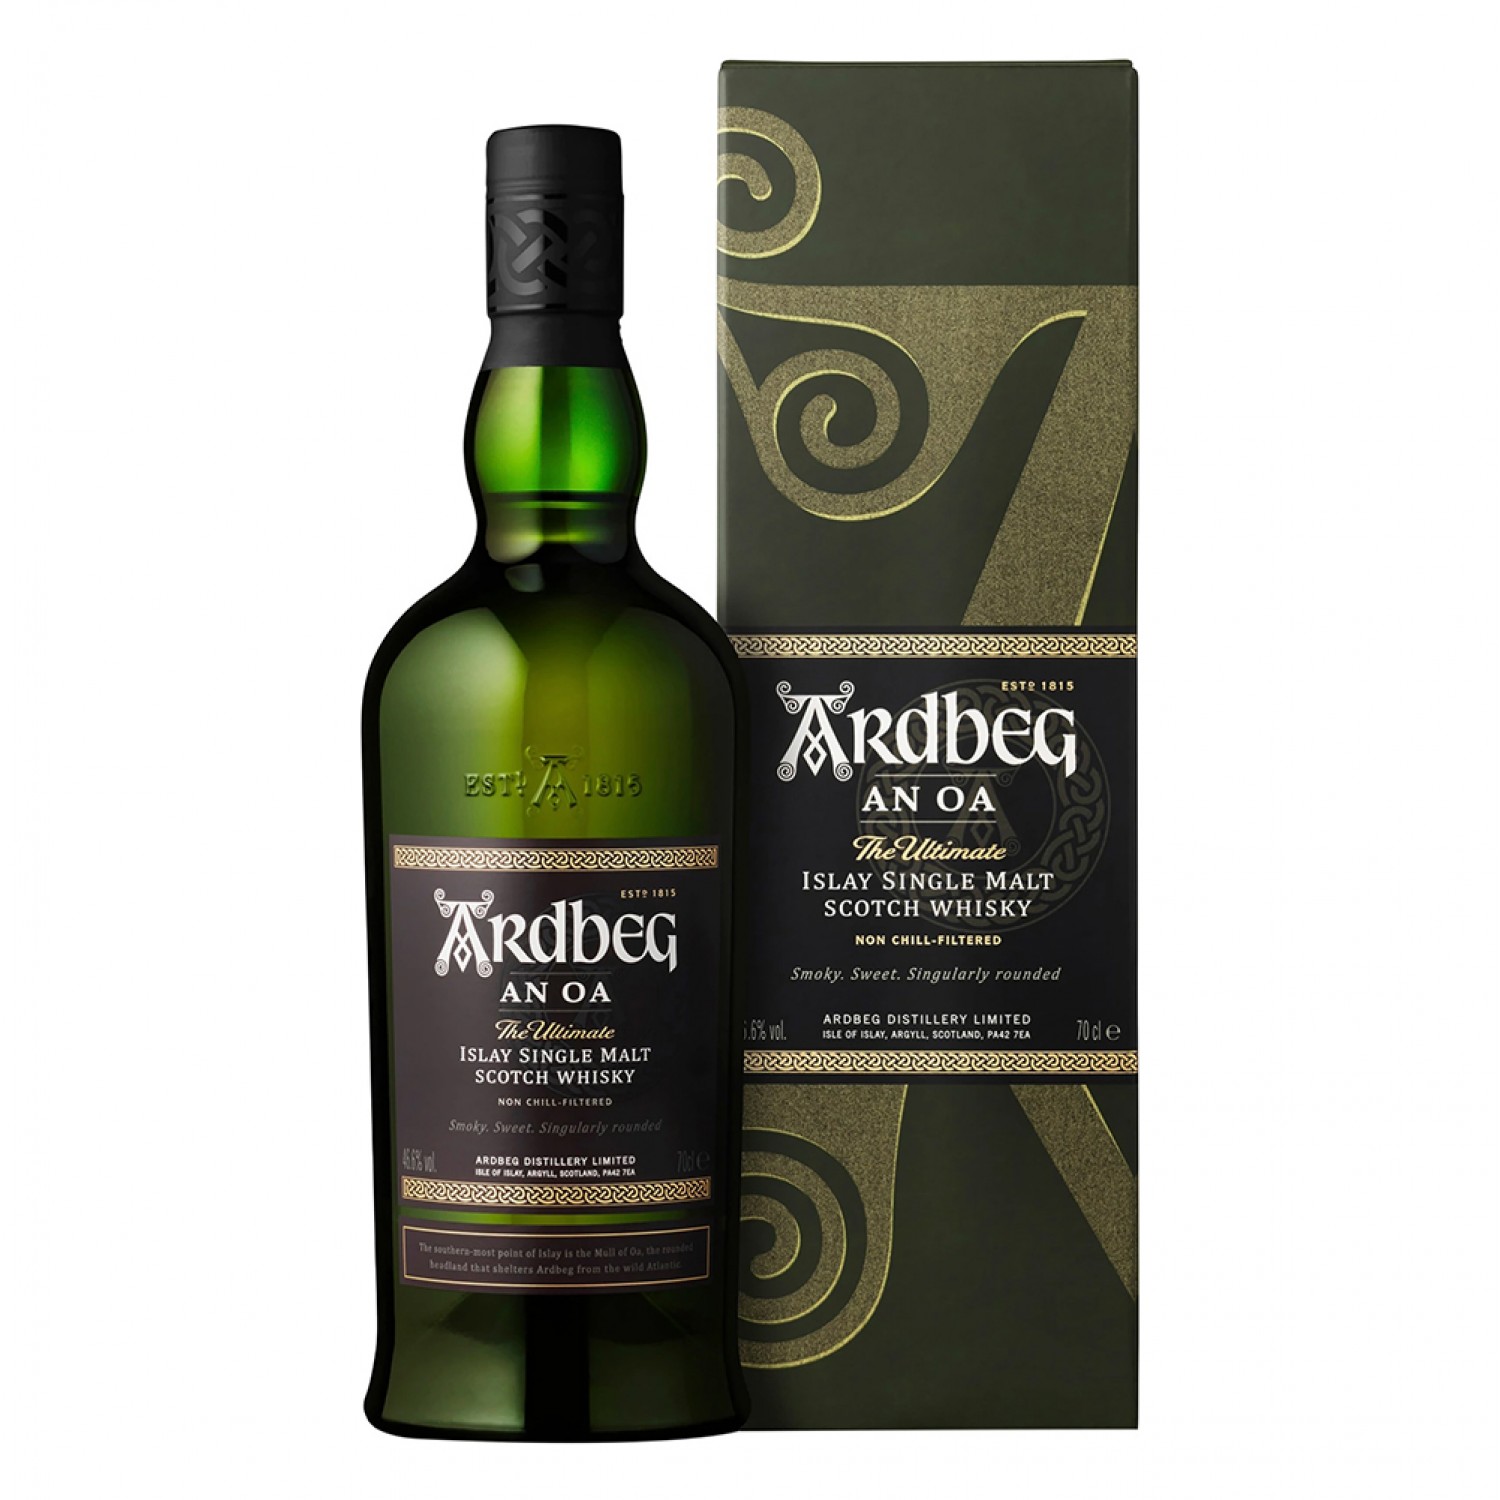 Ardbeg An Oa Islay Single Malt Scotch Whisky, 700ml